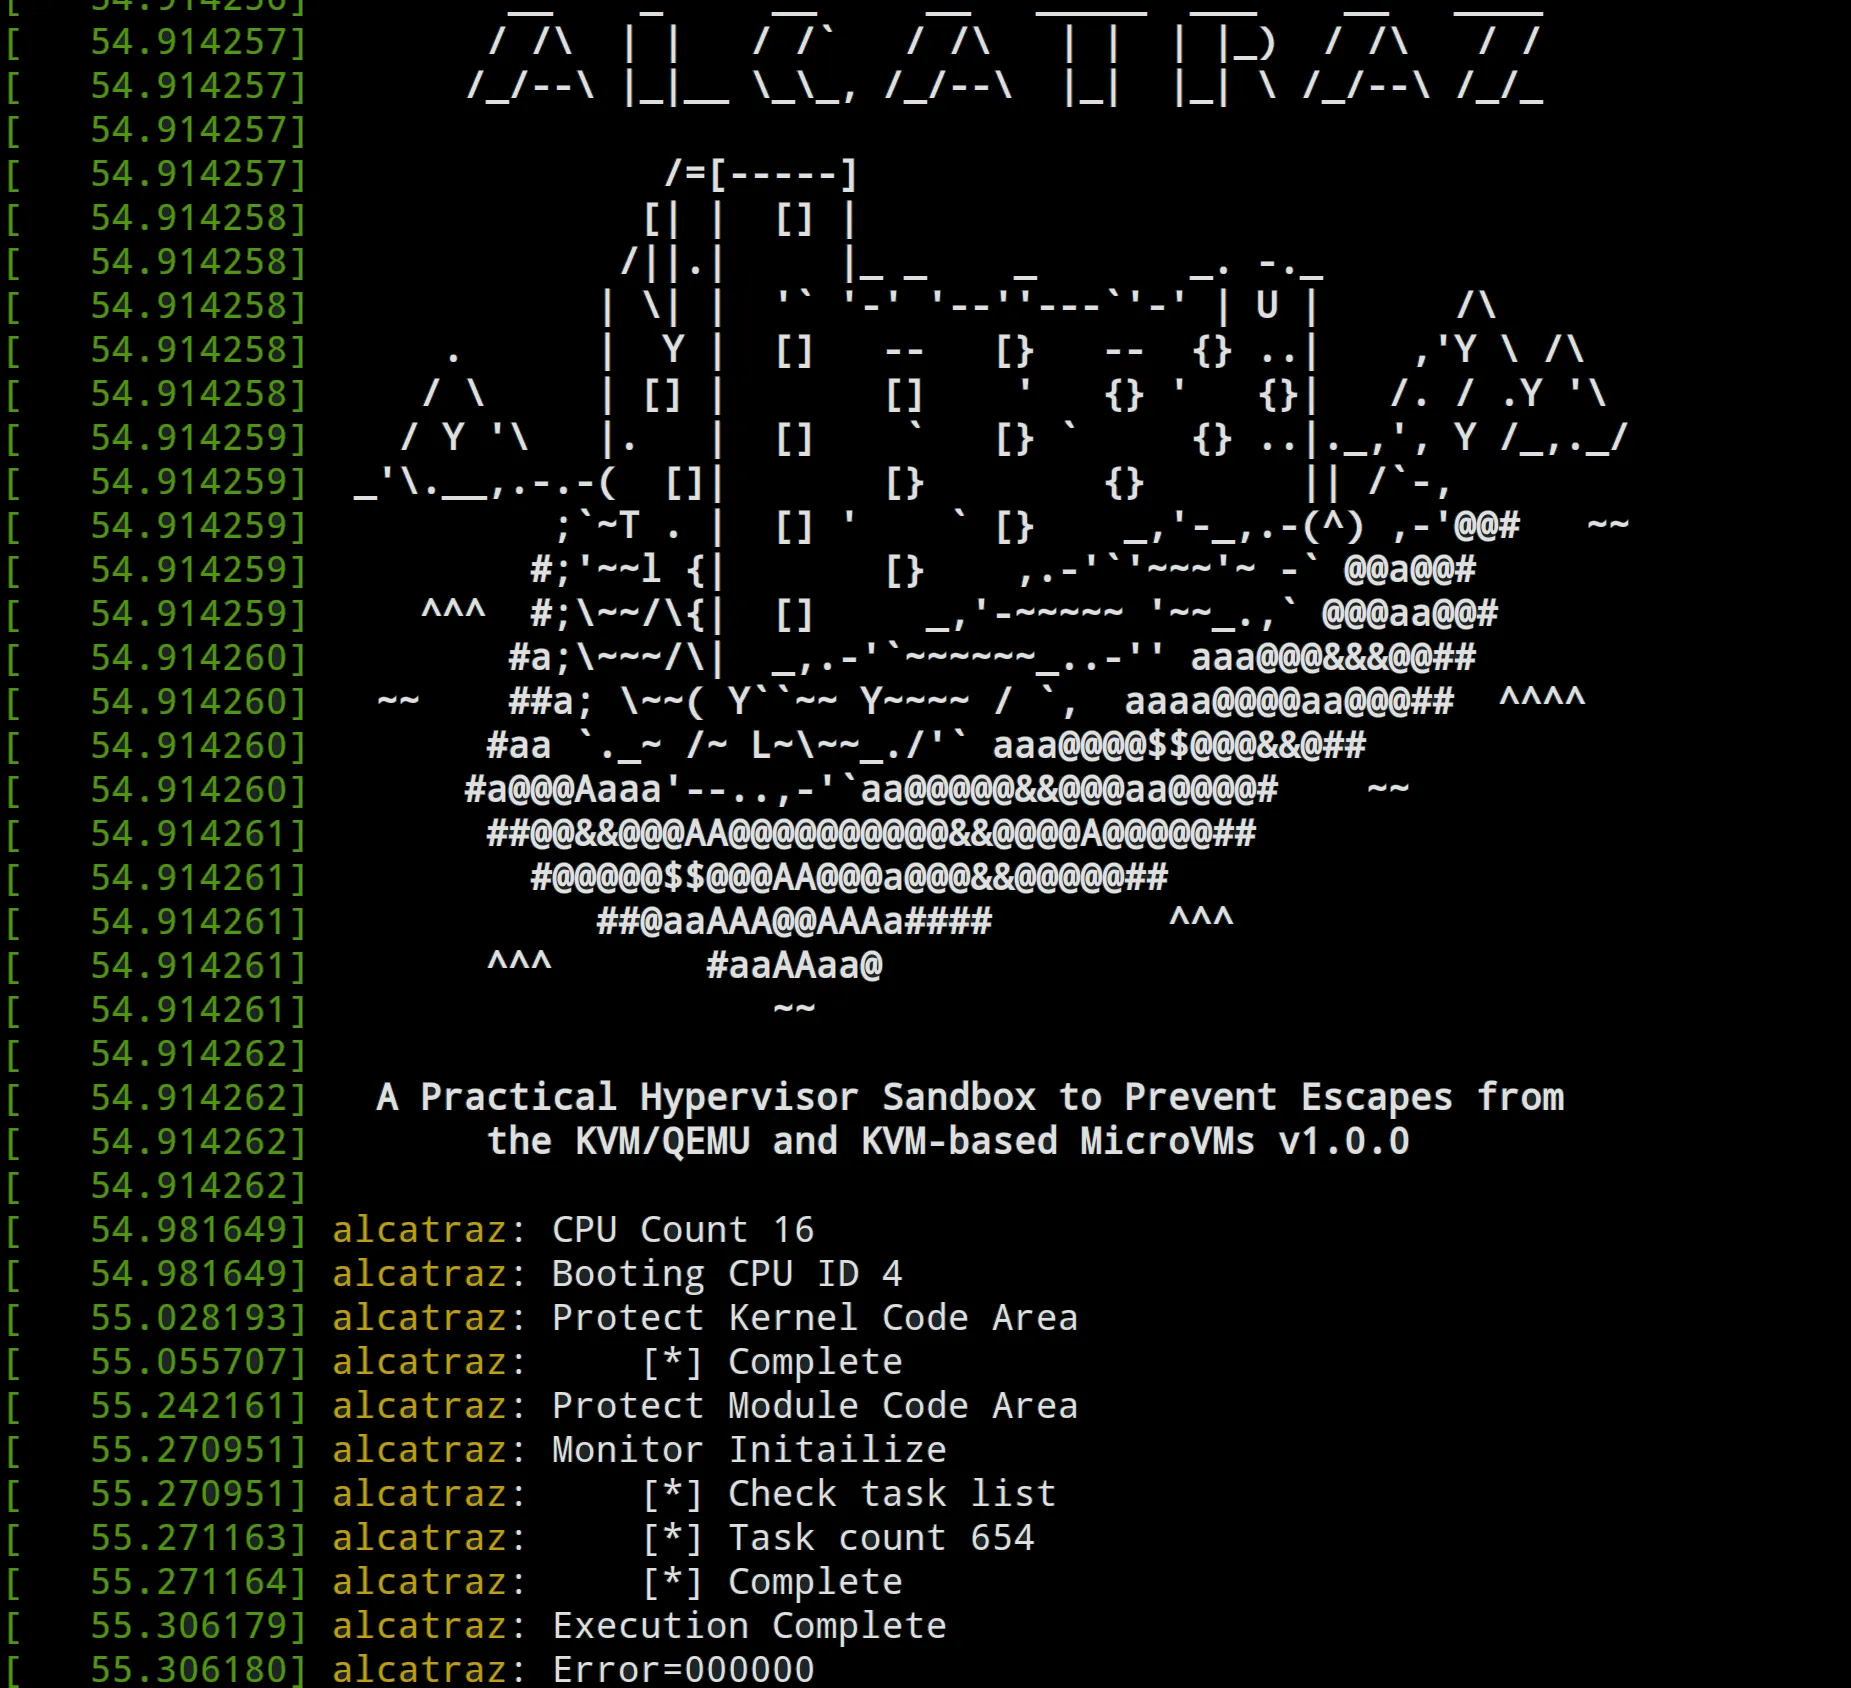 Alcatraz 虚拟机管理程序沙箱 防止逃逸